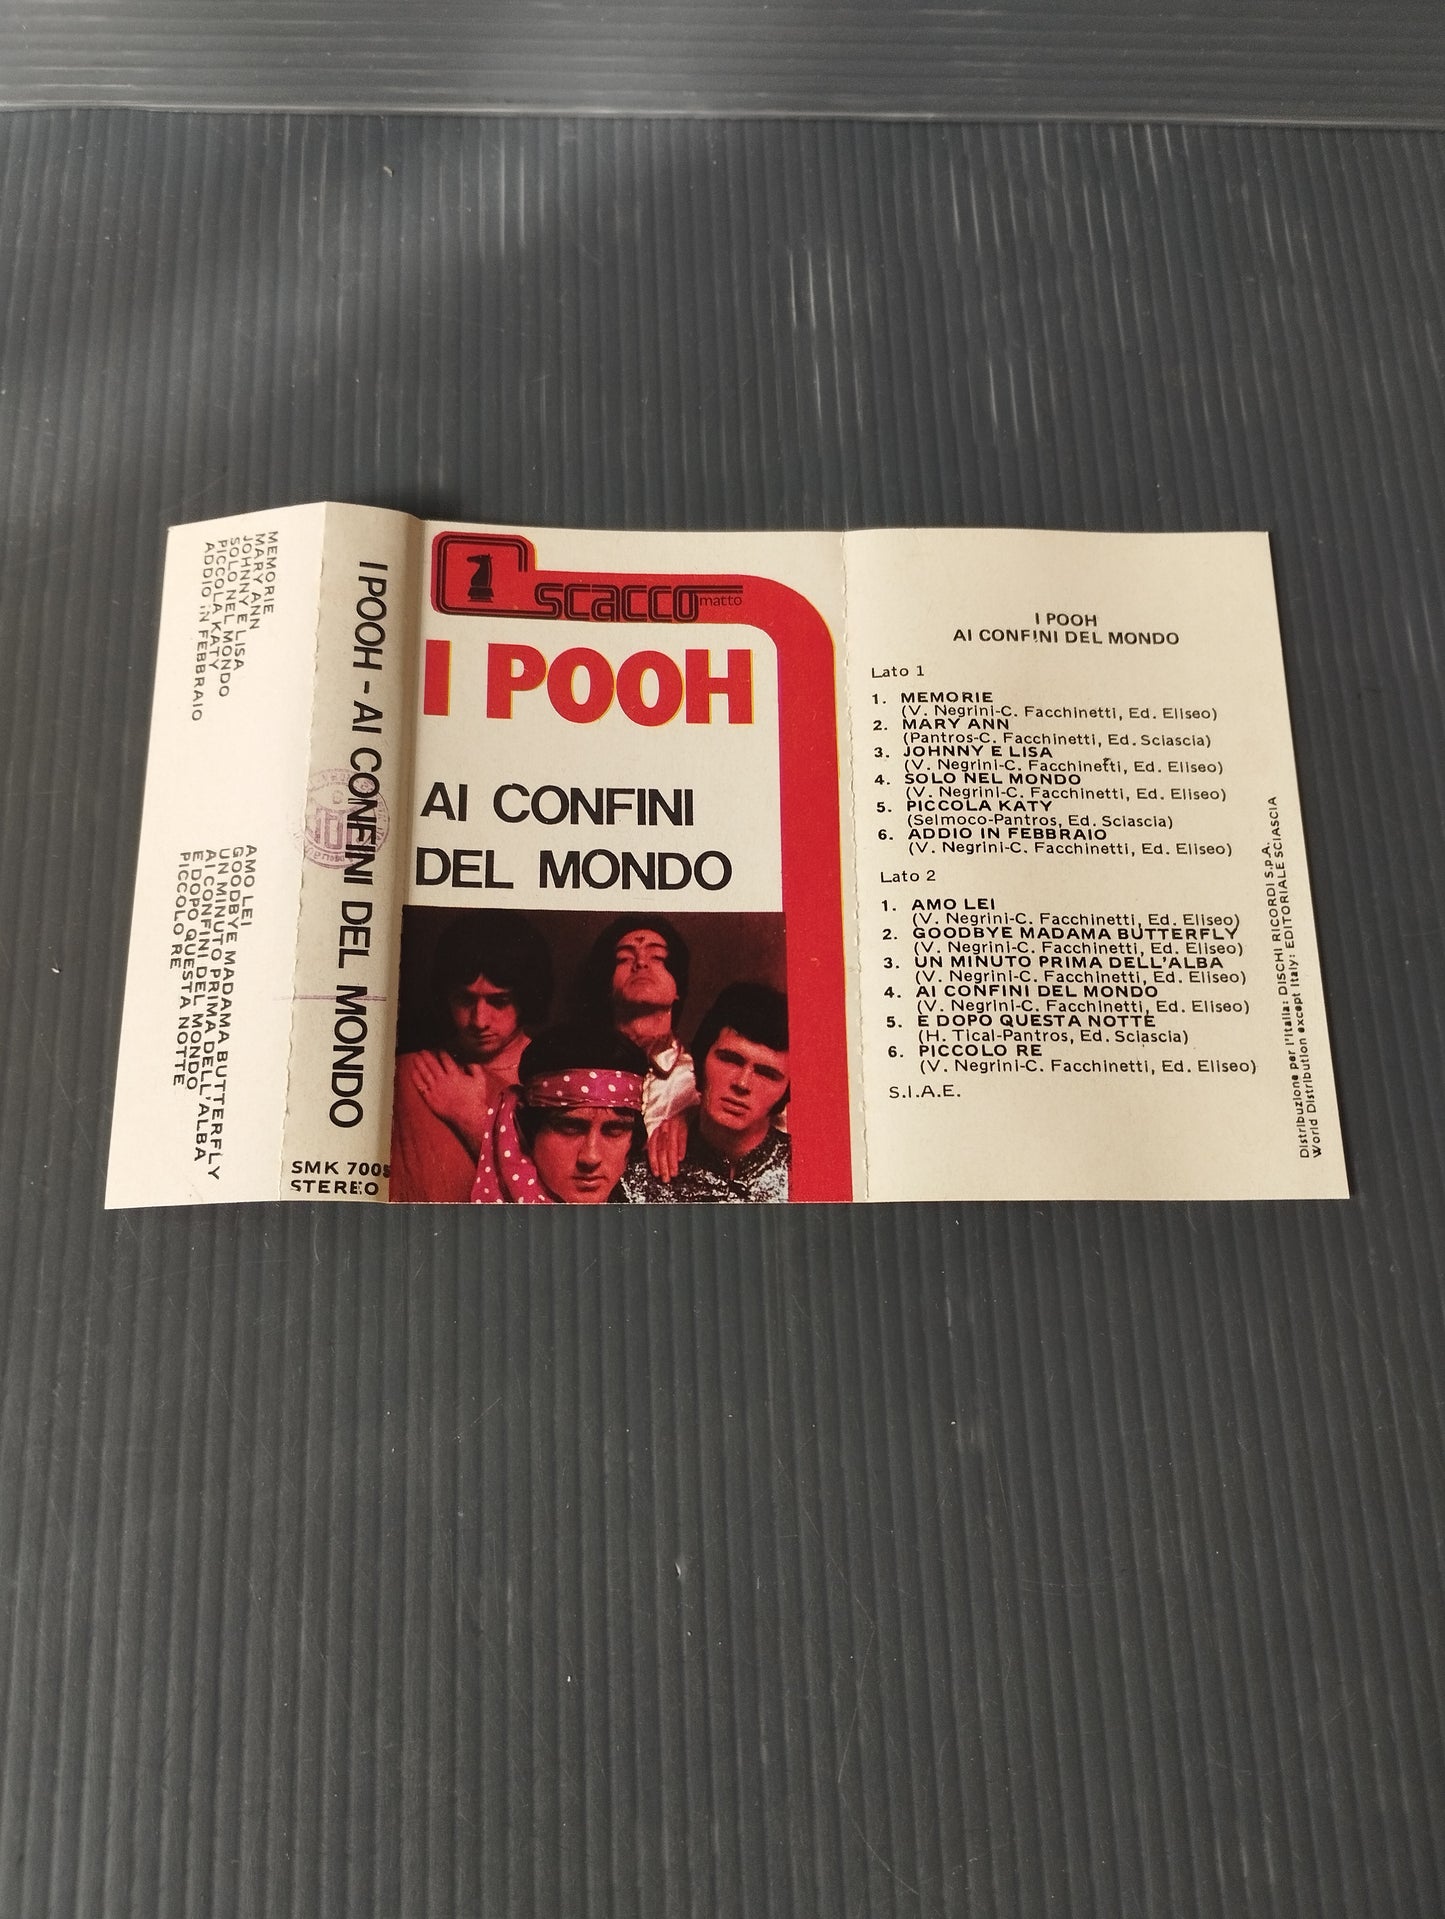 Ai Confini del Mondo i Pooh Musicassetta

Edita negli anni 70 da Scacco